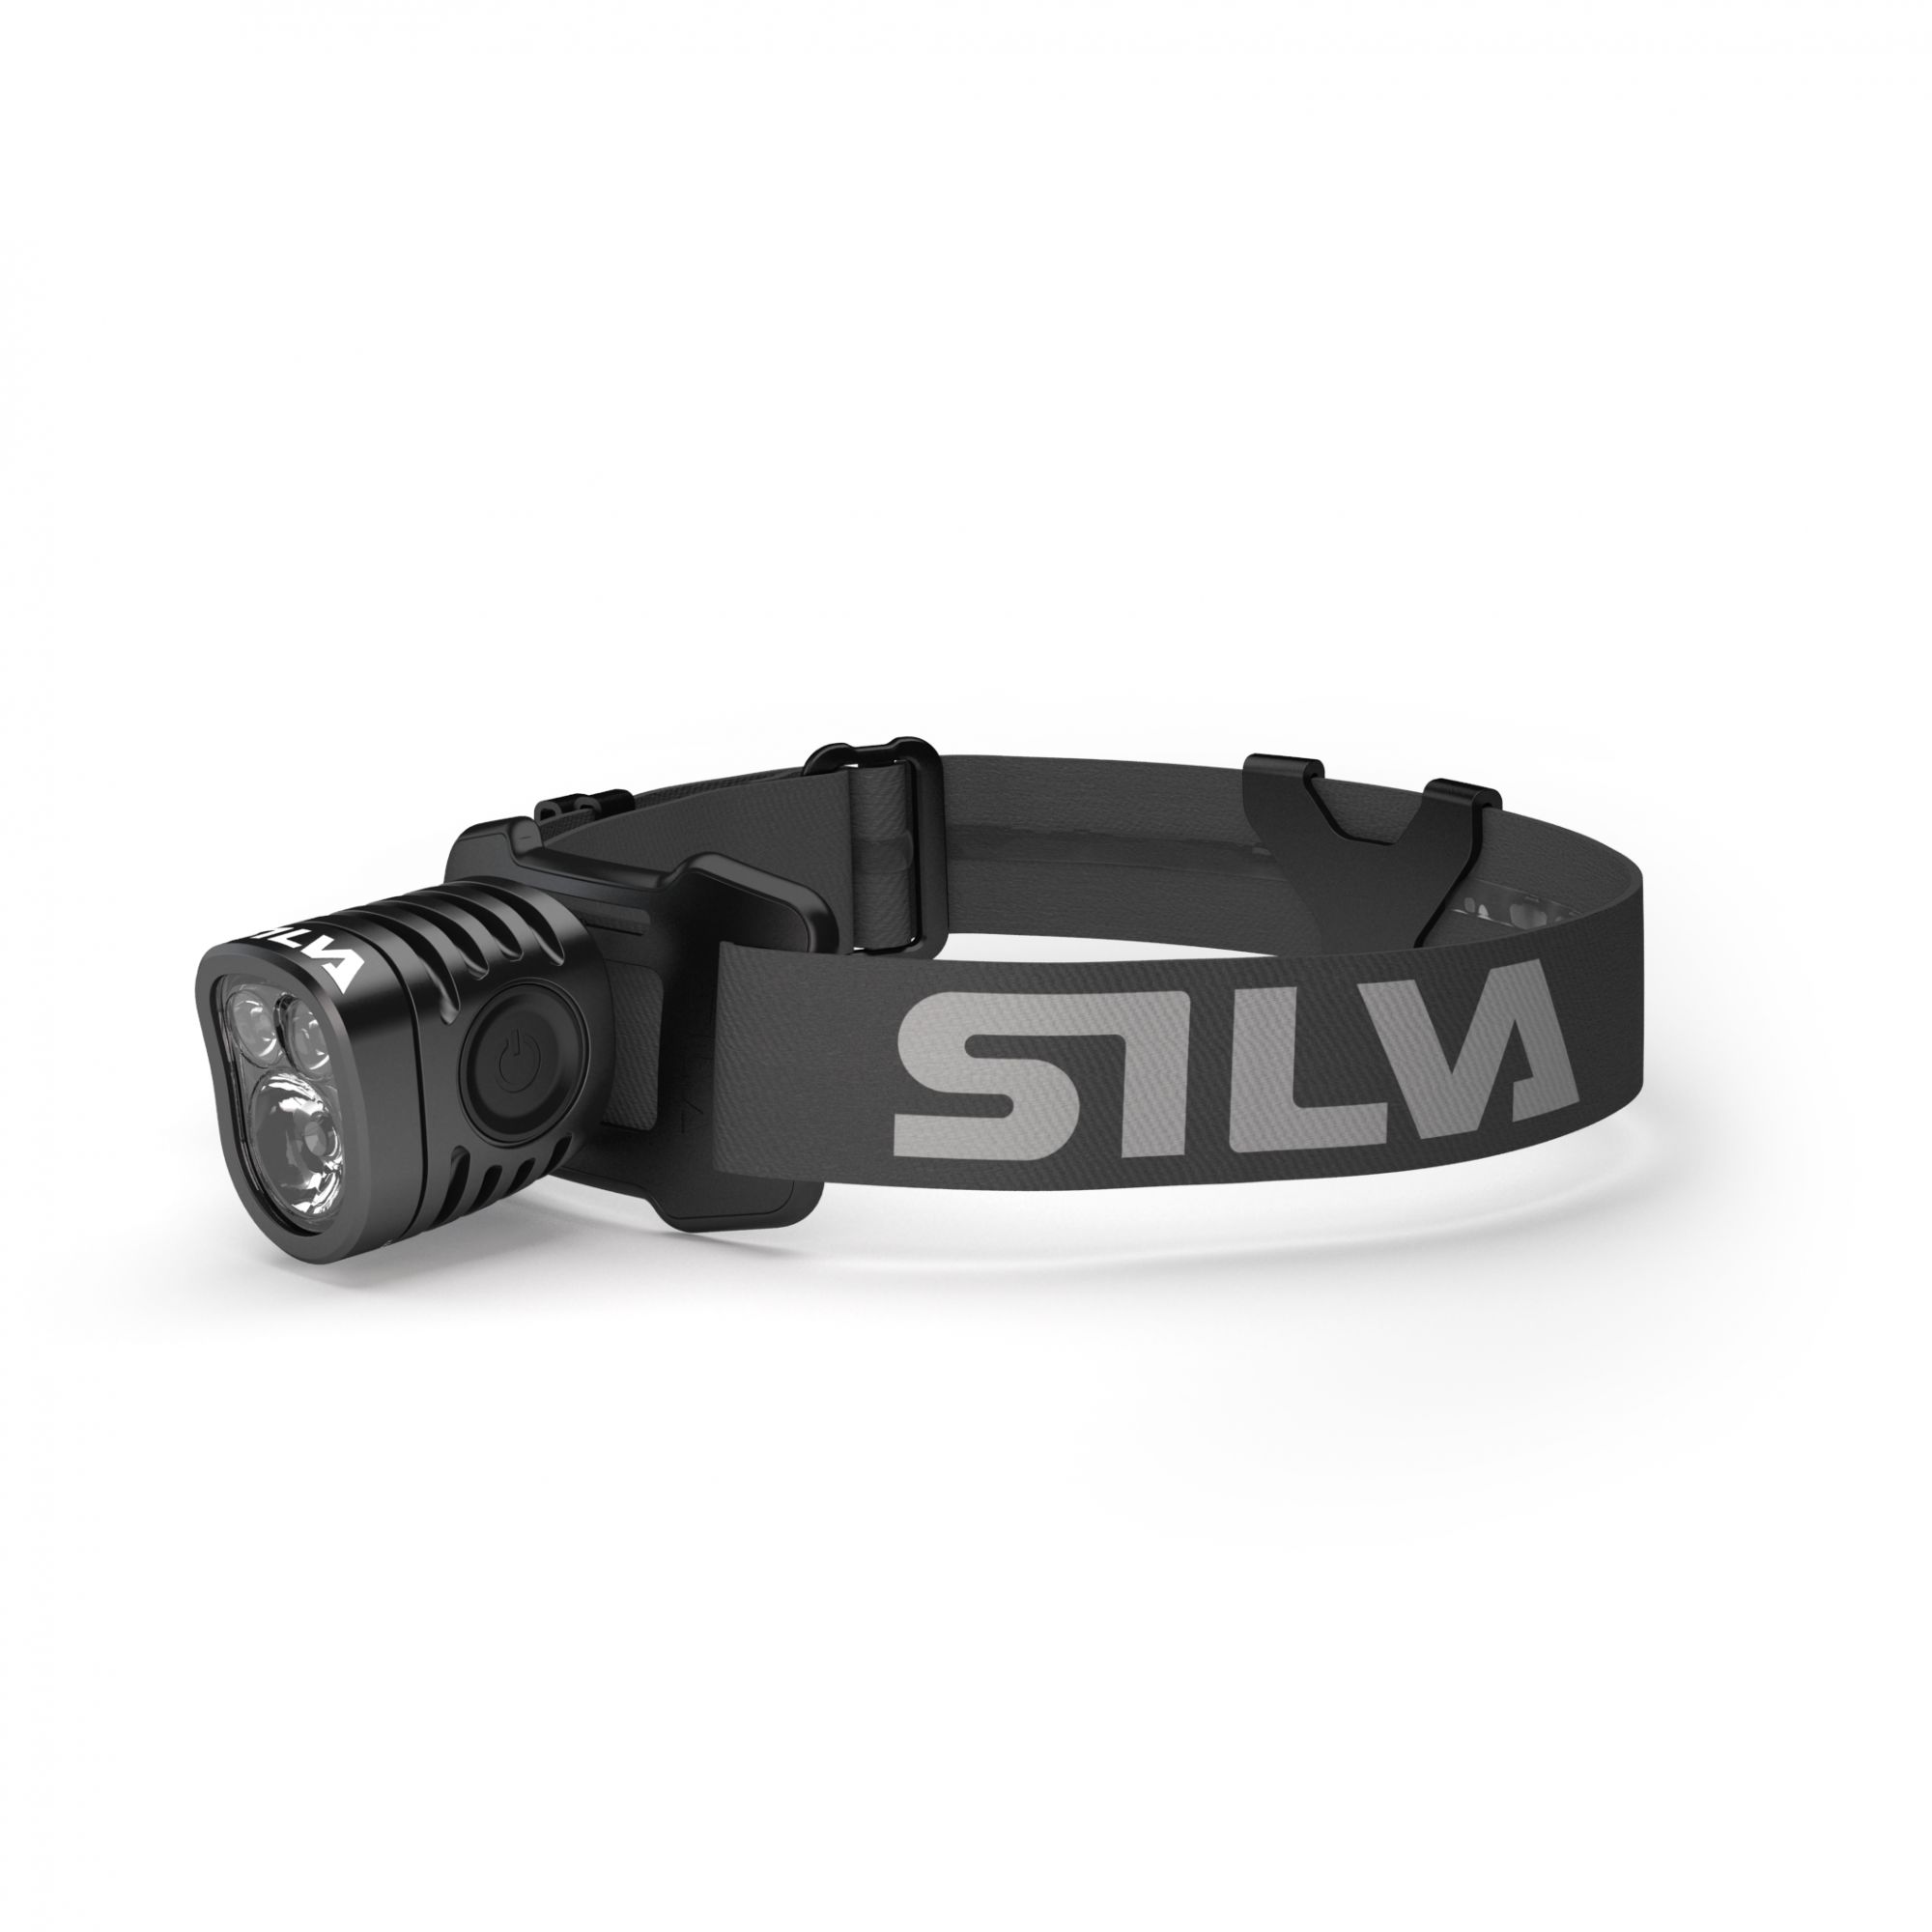 Silva Exceed 4X Schwarz- Stirnlampen- Grsse One Size - Farbe Black unter Silva